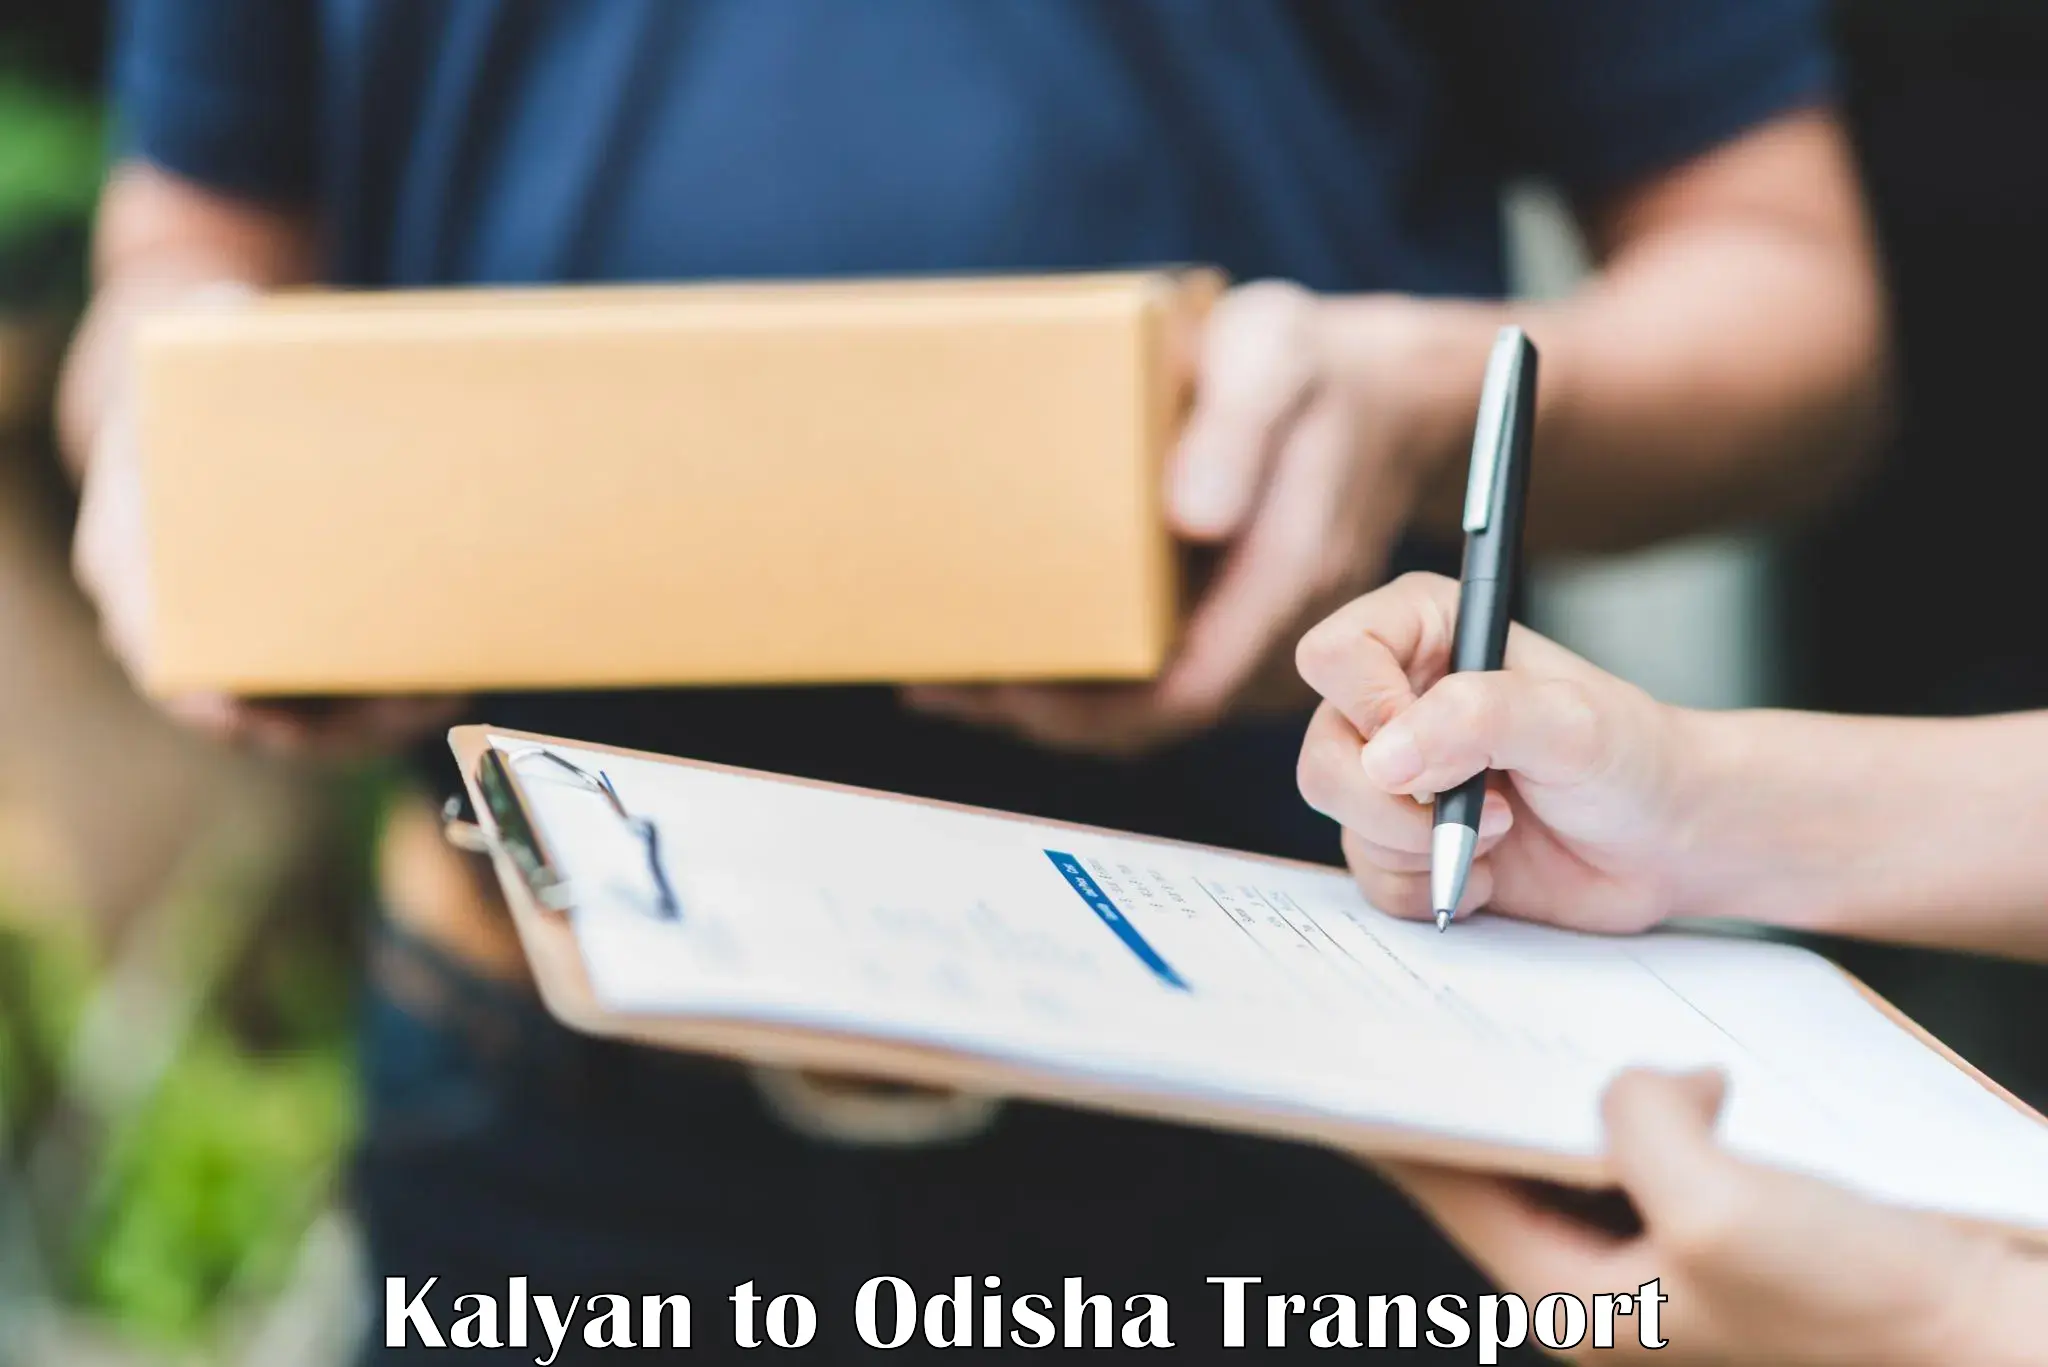 Parcel transport services Kalyan to Badamba